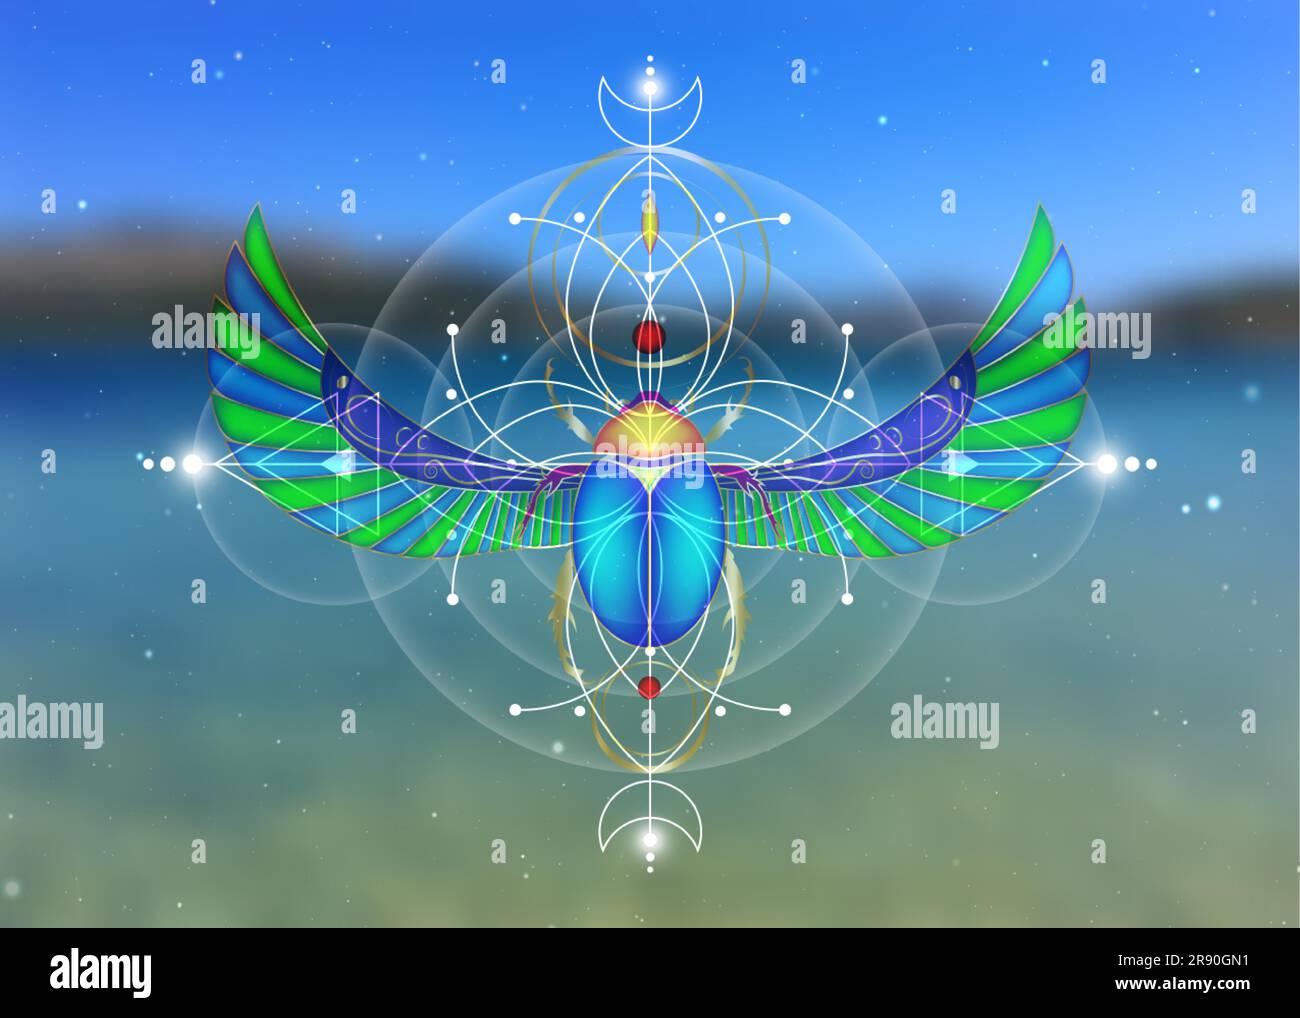 Géométrie sacrée, scarabée sur Fleur de vie, dessin mystique de cercles, triangles, lune, schéma d'énergie. Symboles de l'alchimie, de la magie, de l'ésotérique, Illustration de Vecteur